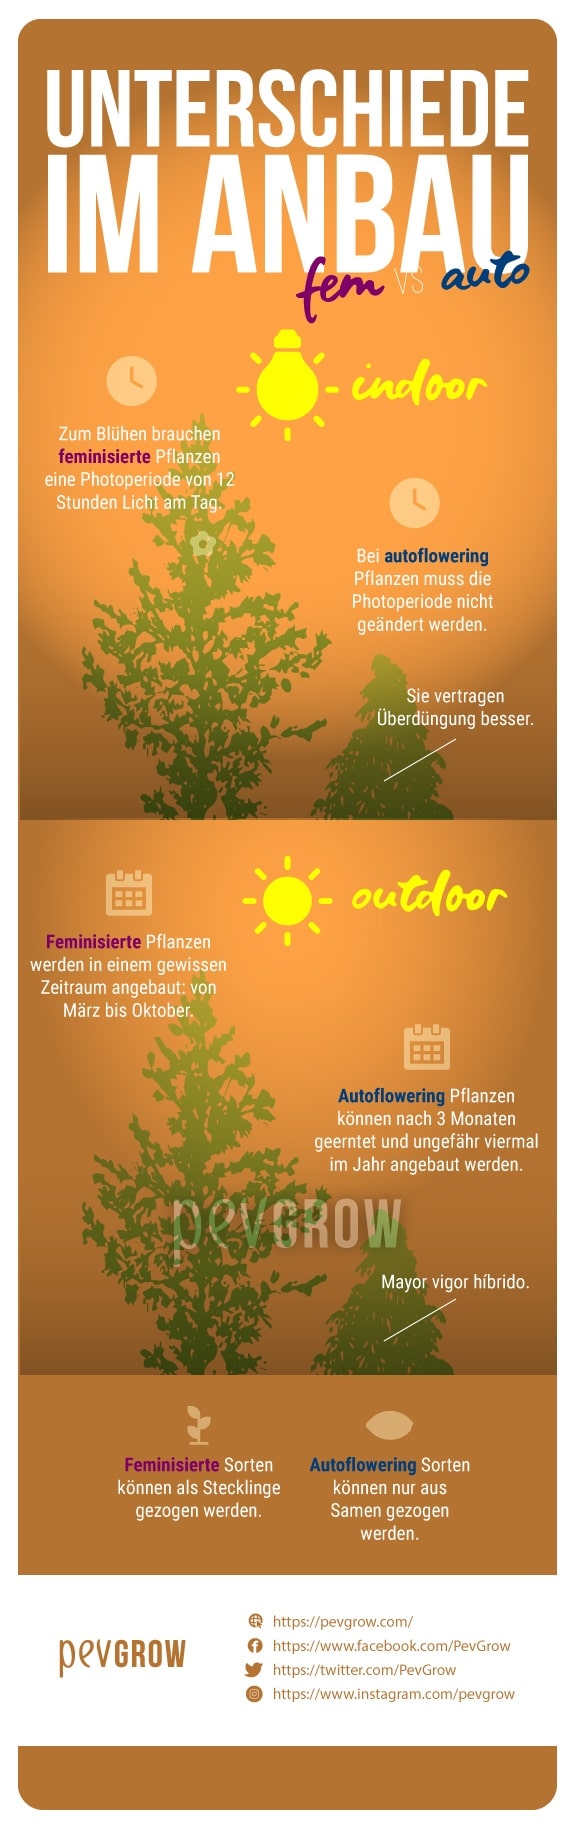 Das Bild zeigt die Unterschiede im Anbau von feminisierten und autoflowering Cannabispflanzen*